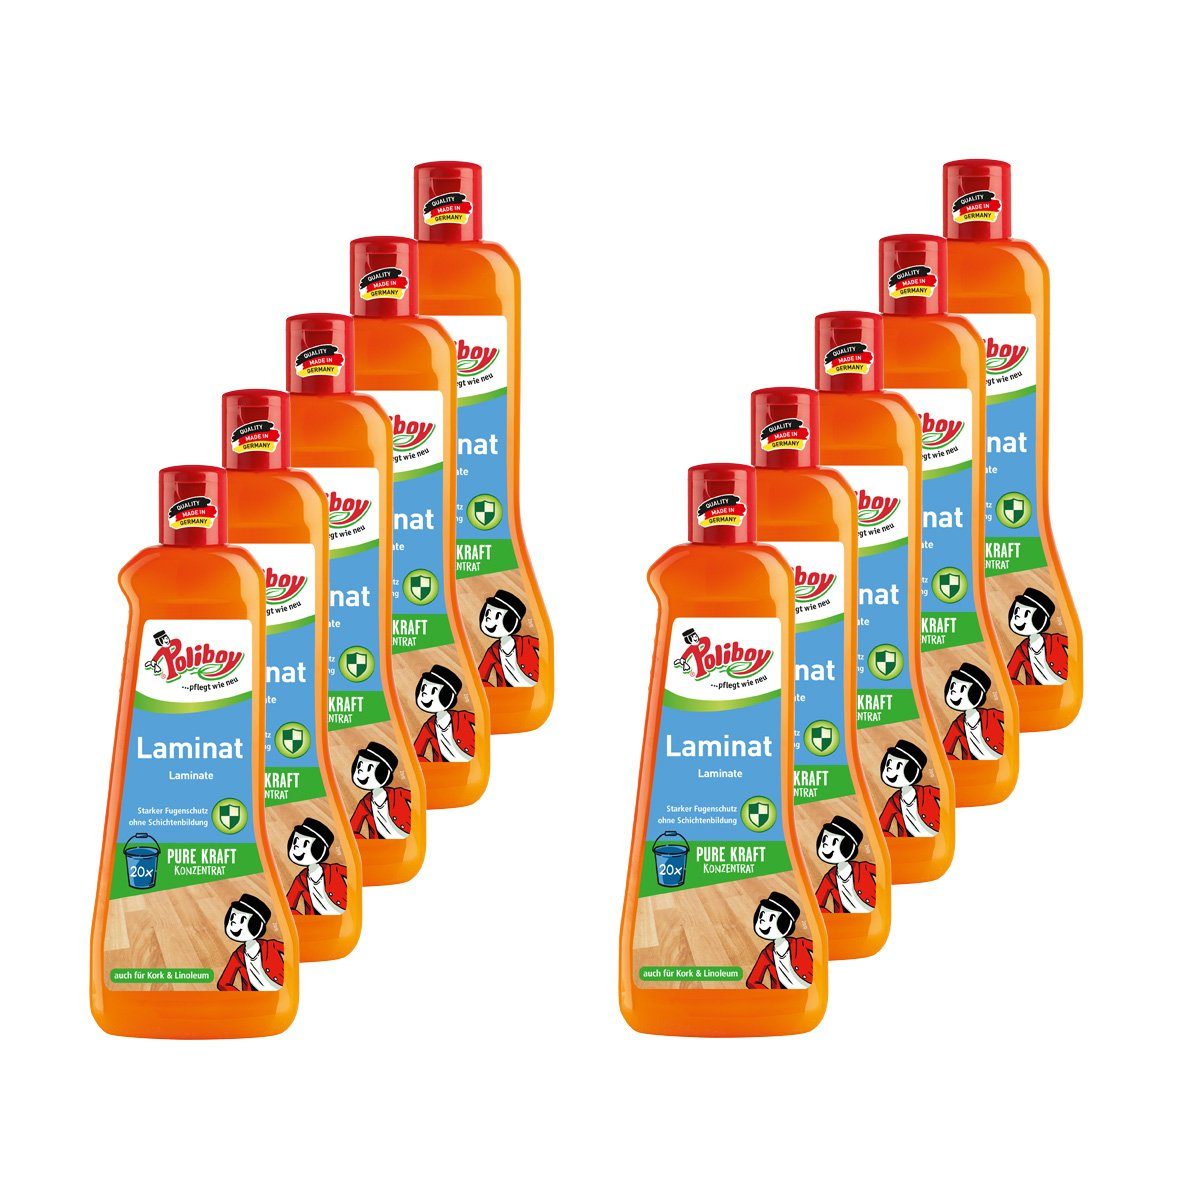 poliboy Laminat Pflege Konzentrat mit Orangenöl - 5 Liter - Laminatreiniger (auch für Kork und Linoleum - Kraftvoll/Streifenfrei - Made in Germany)